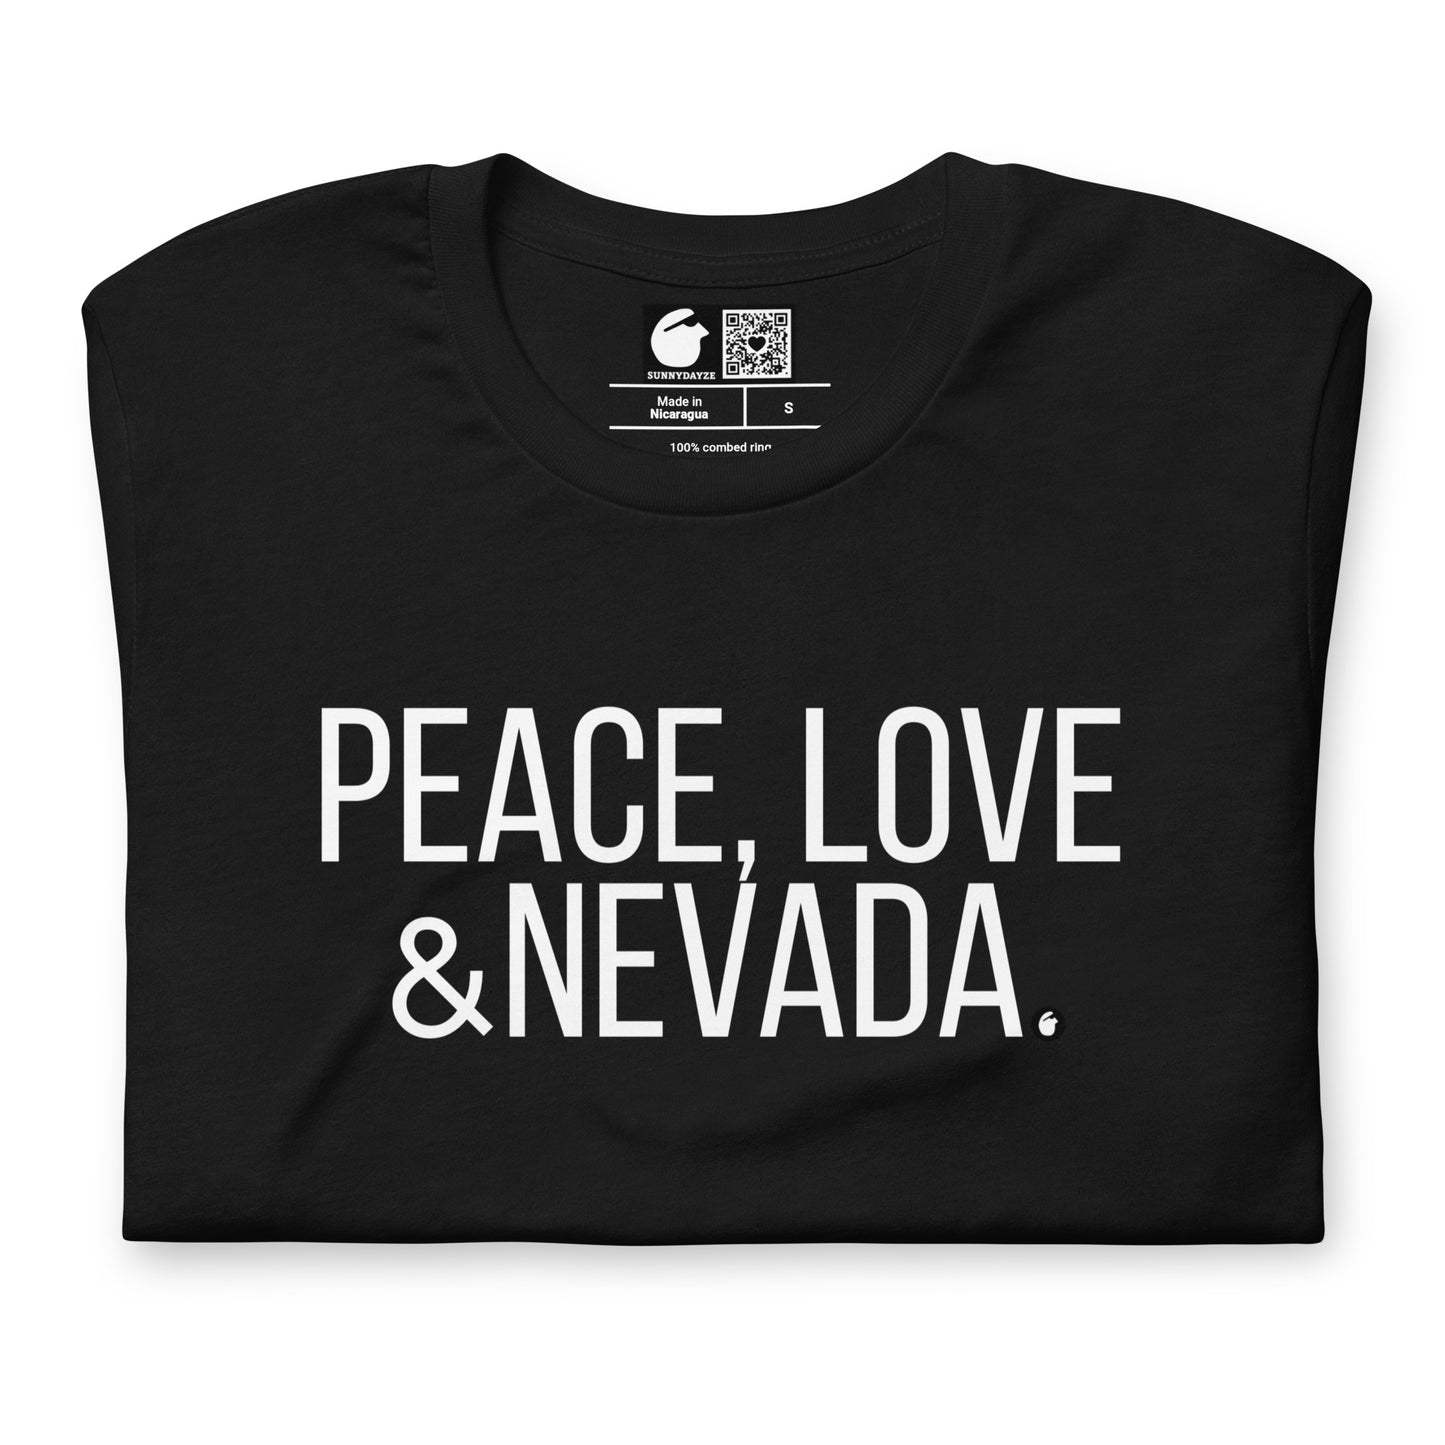 NEVADA Short-Sleeve unisex t-shirt